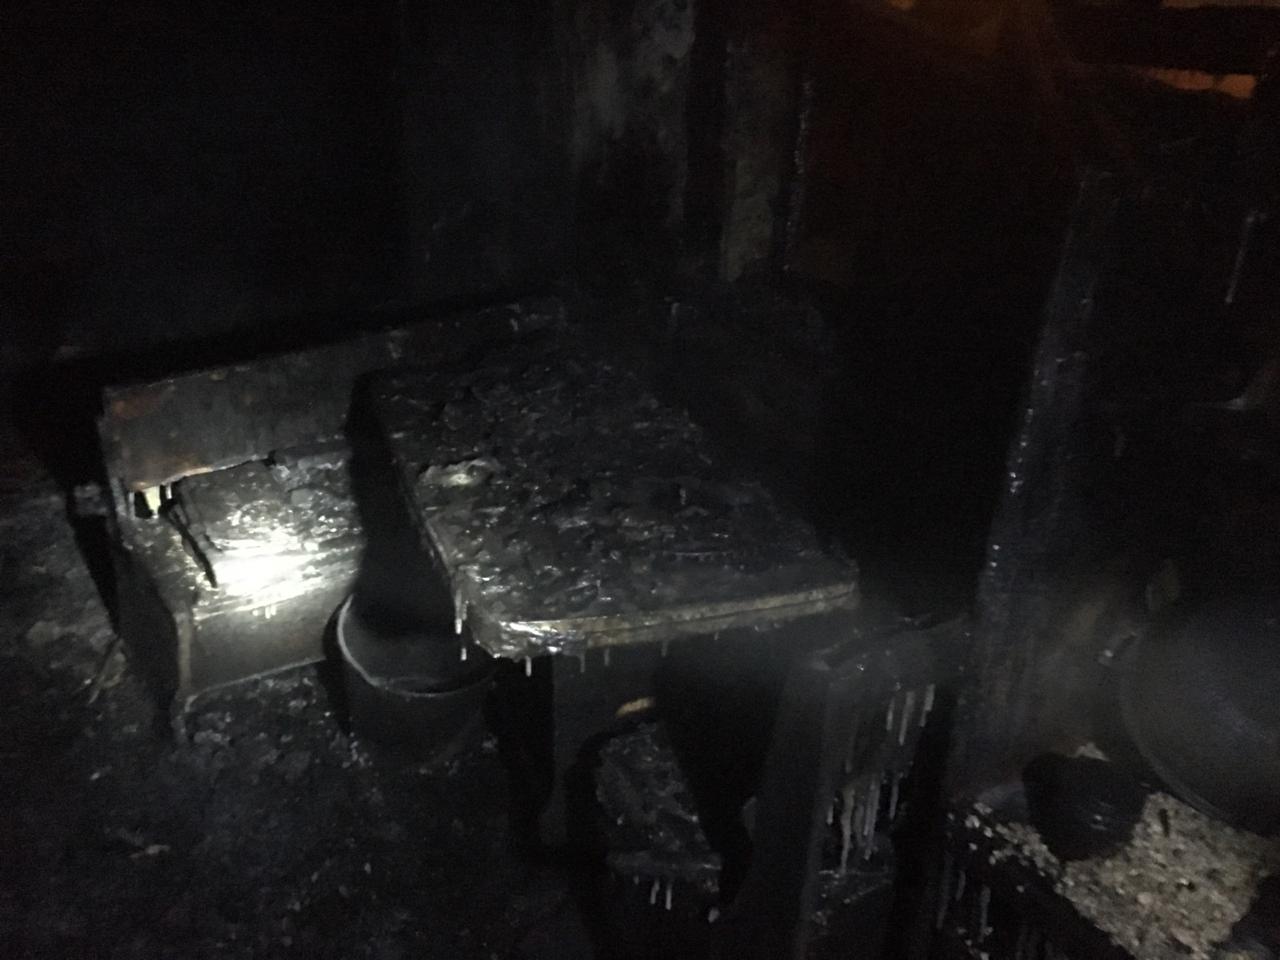 Тело женщины обнаружено на месте пожара в Чите (18+)